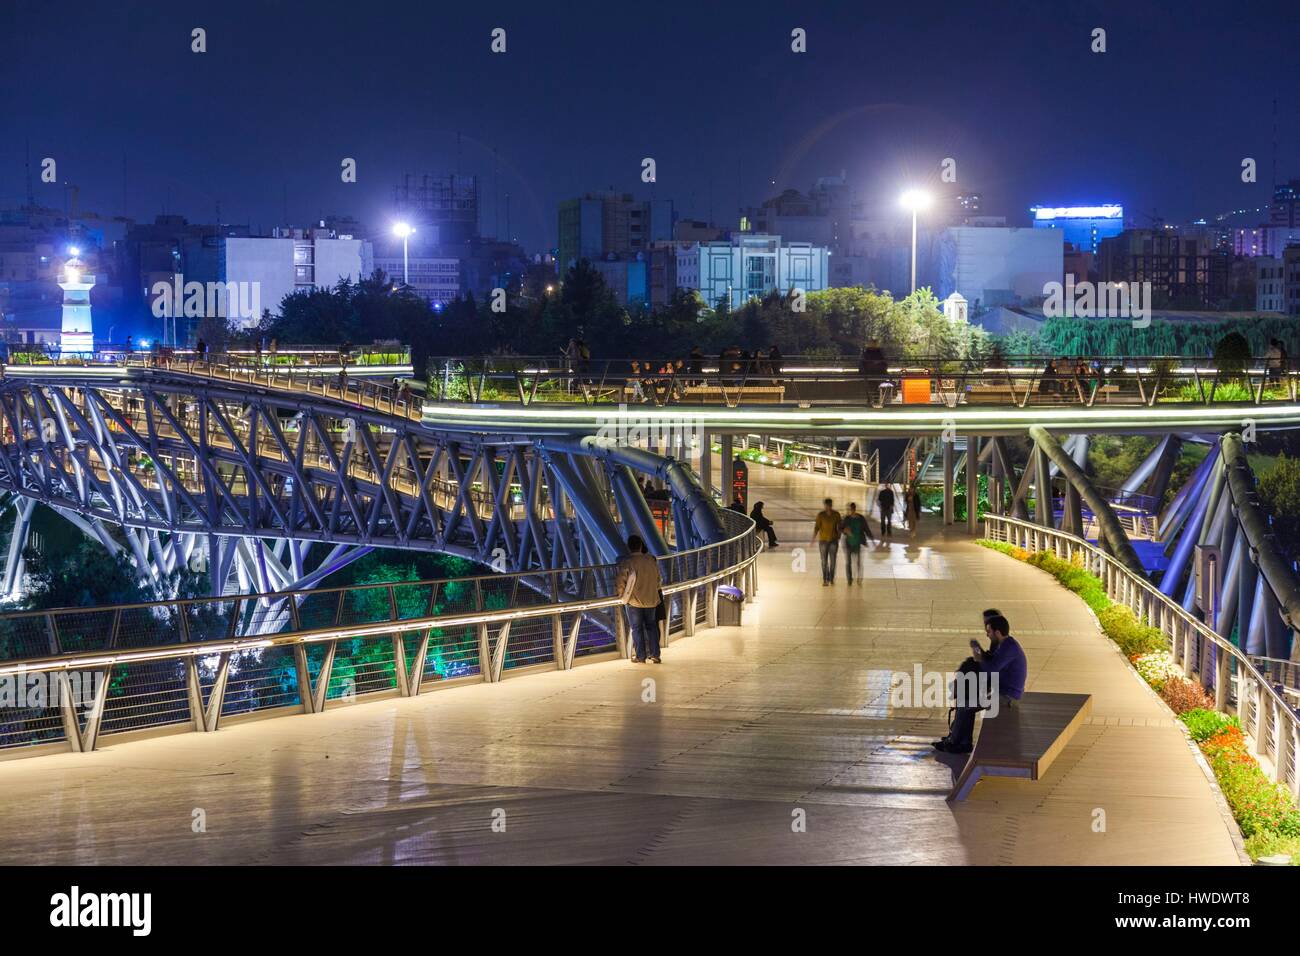 Iran, Teheran, Skyline der Stadt vom Pol e Tabiat Natur Brücke, entworfen von Canadian-iranischen Architekten Leila Araghian, gebaut im Jahr 2014, Dämmerung, Besucher Stockfoto